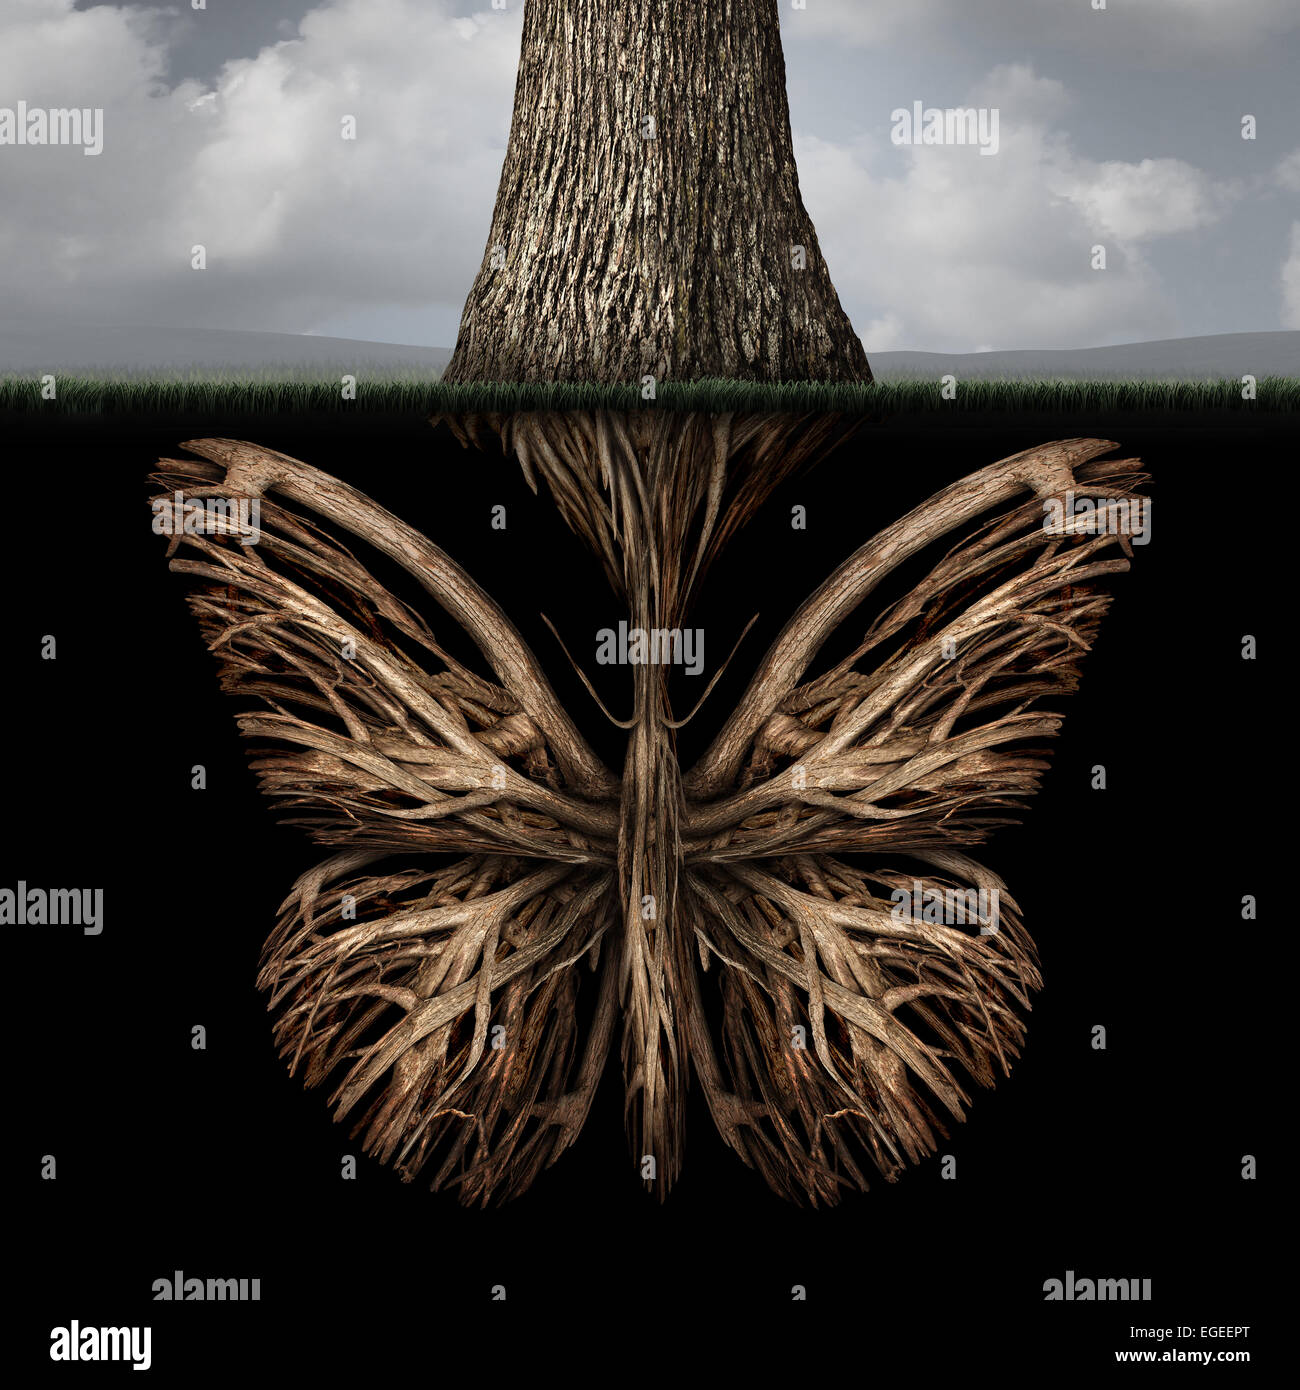 Kreativen Wurzeln Konzept wie ein Baum mit einem Stamm geformt wie ein Schmetterling als eine starke ökologische Metapher oder ein Symbol für innere Gedanken und starke Kreativität Stiftung. Stockfoto